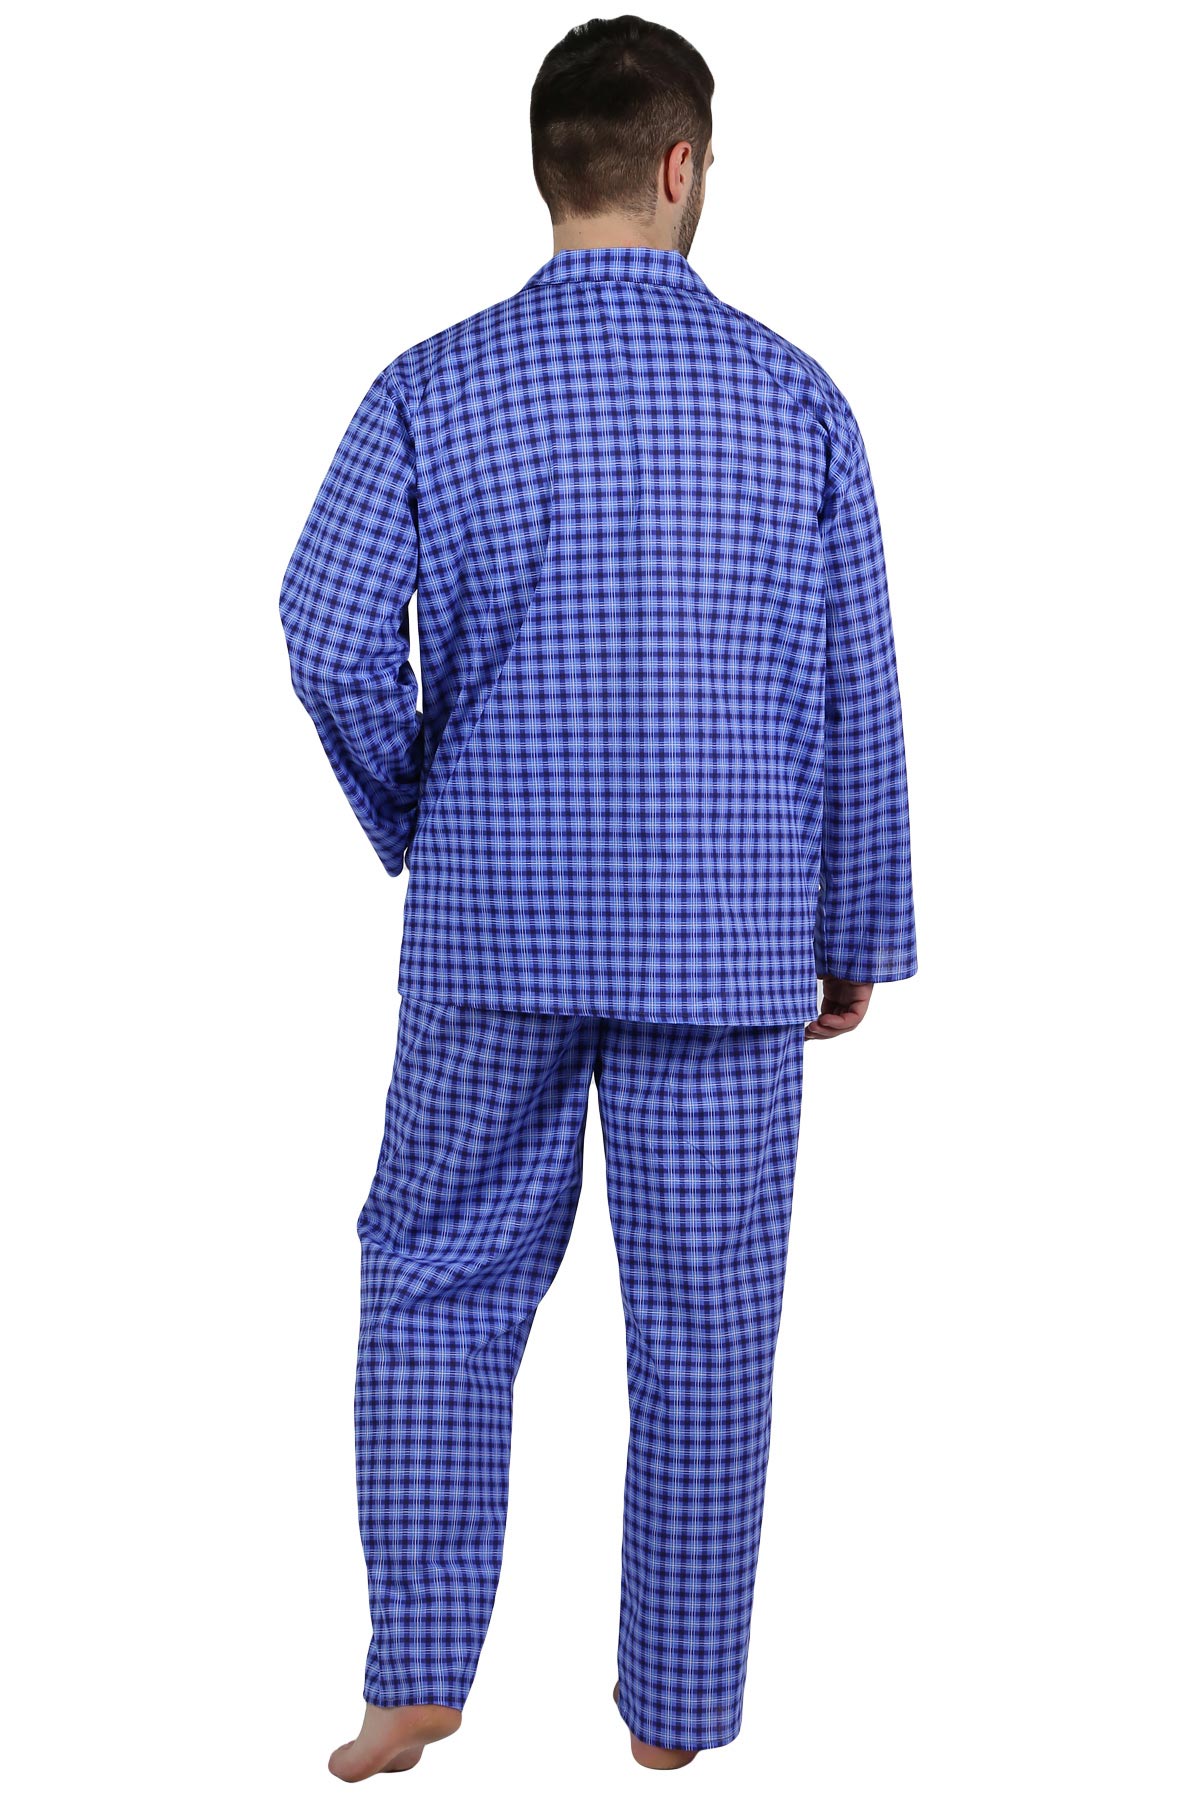 Муж. пижама арт. 22-0210 В ассортименте р. 48 Оптима трикотаж, размер 48 - фото 3